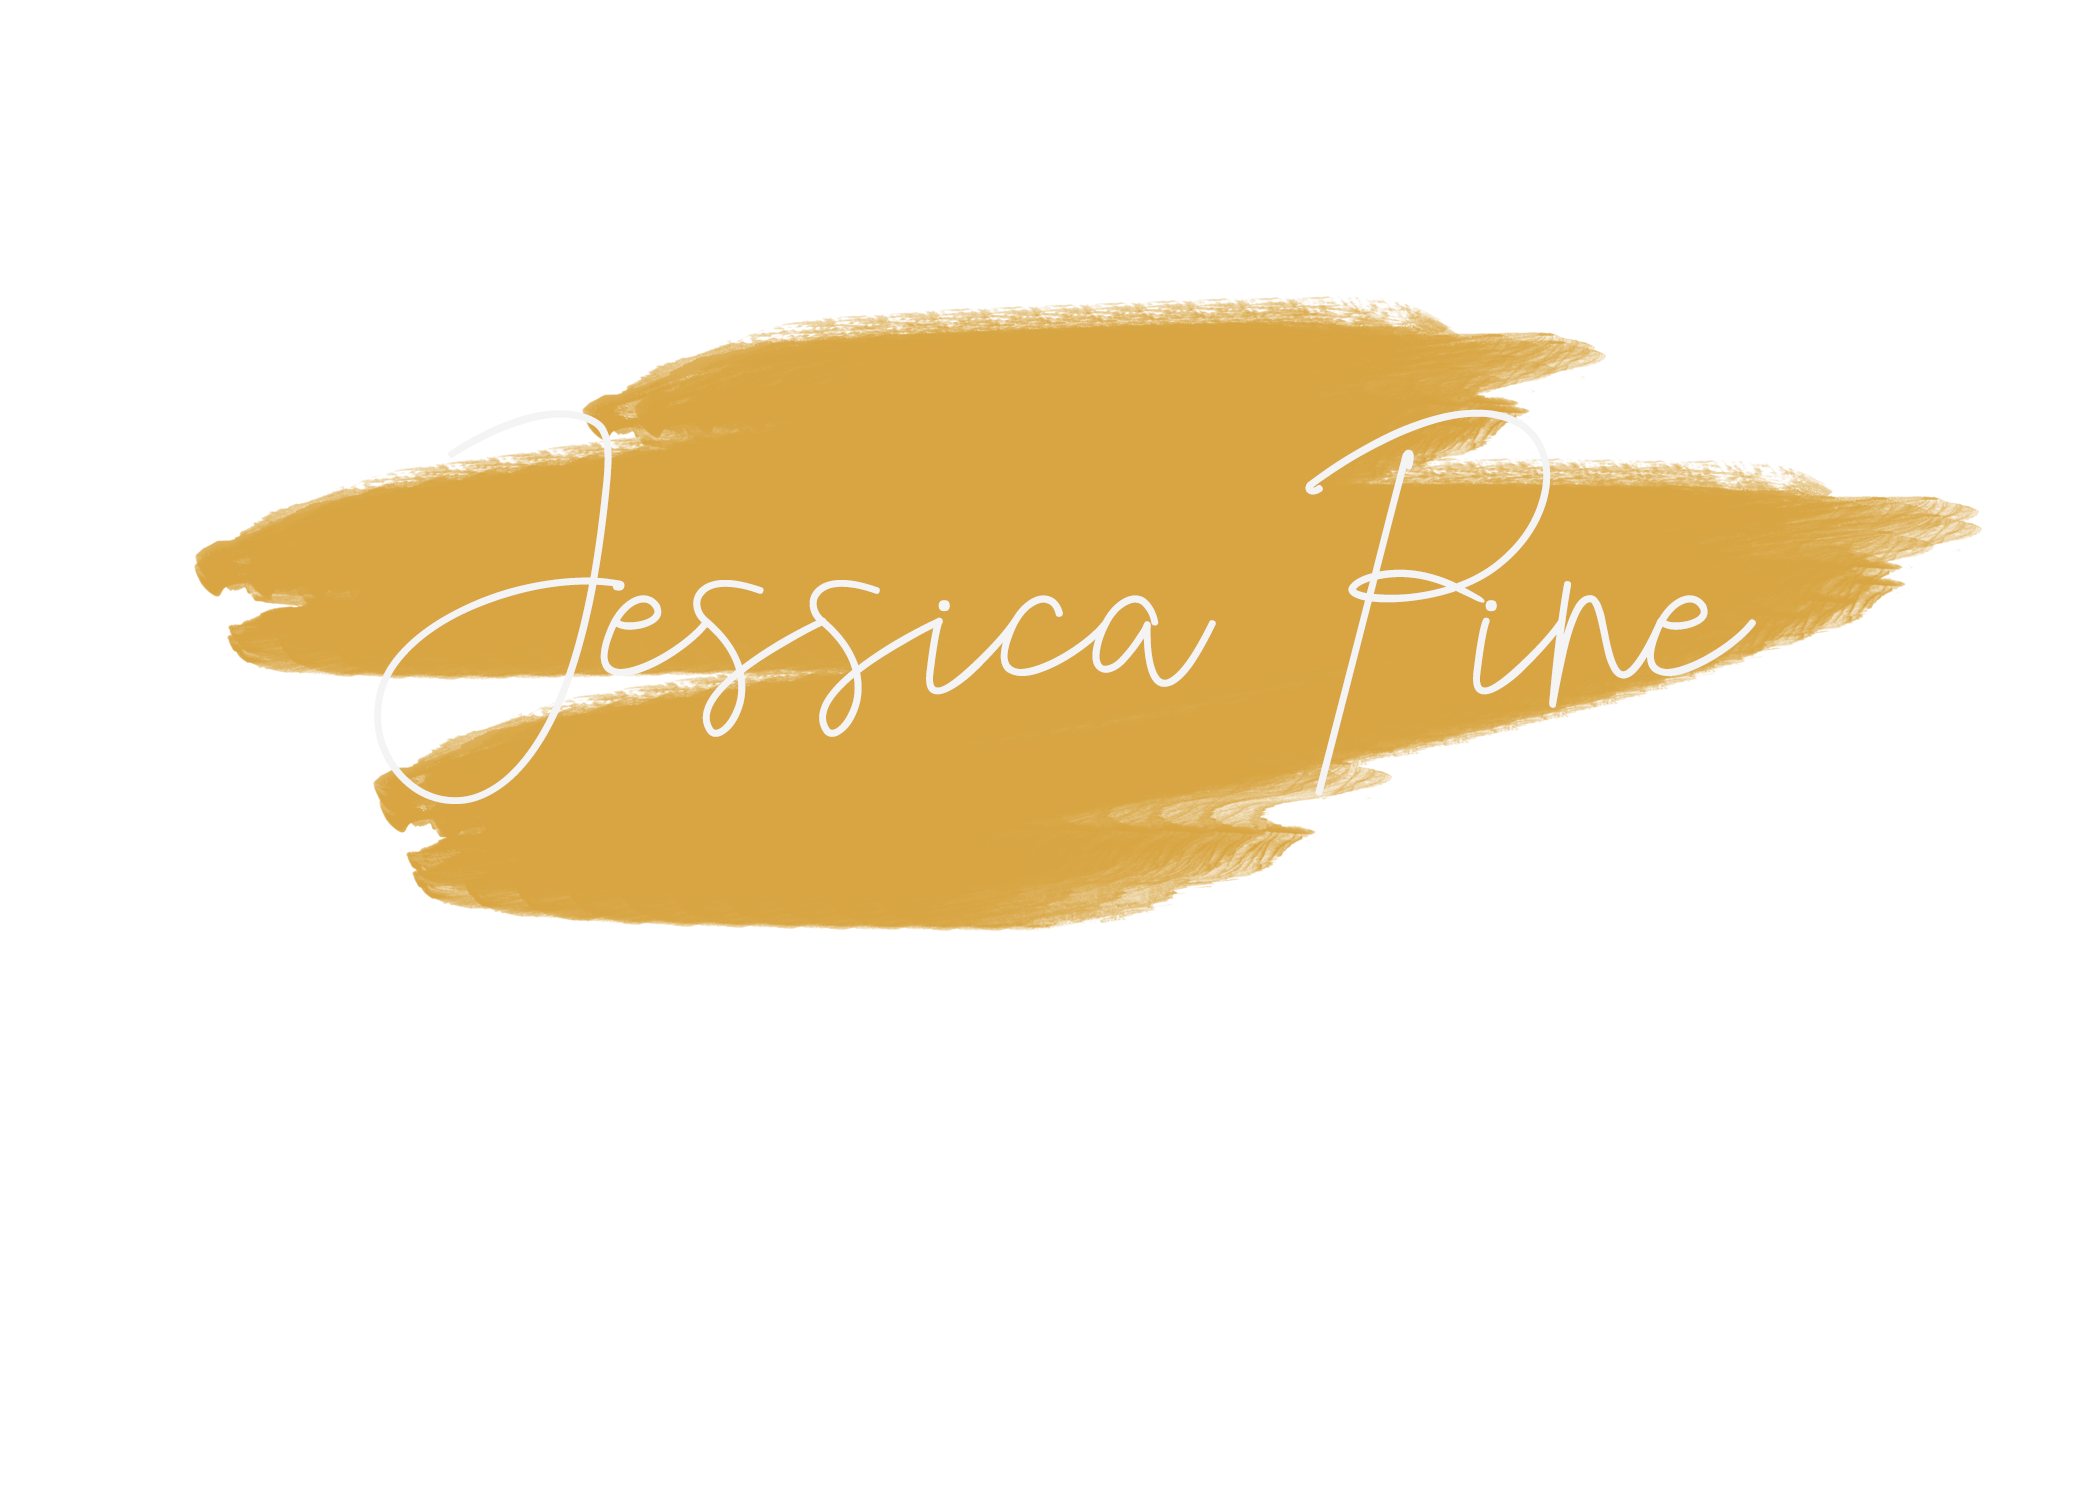 Jessica Pine